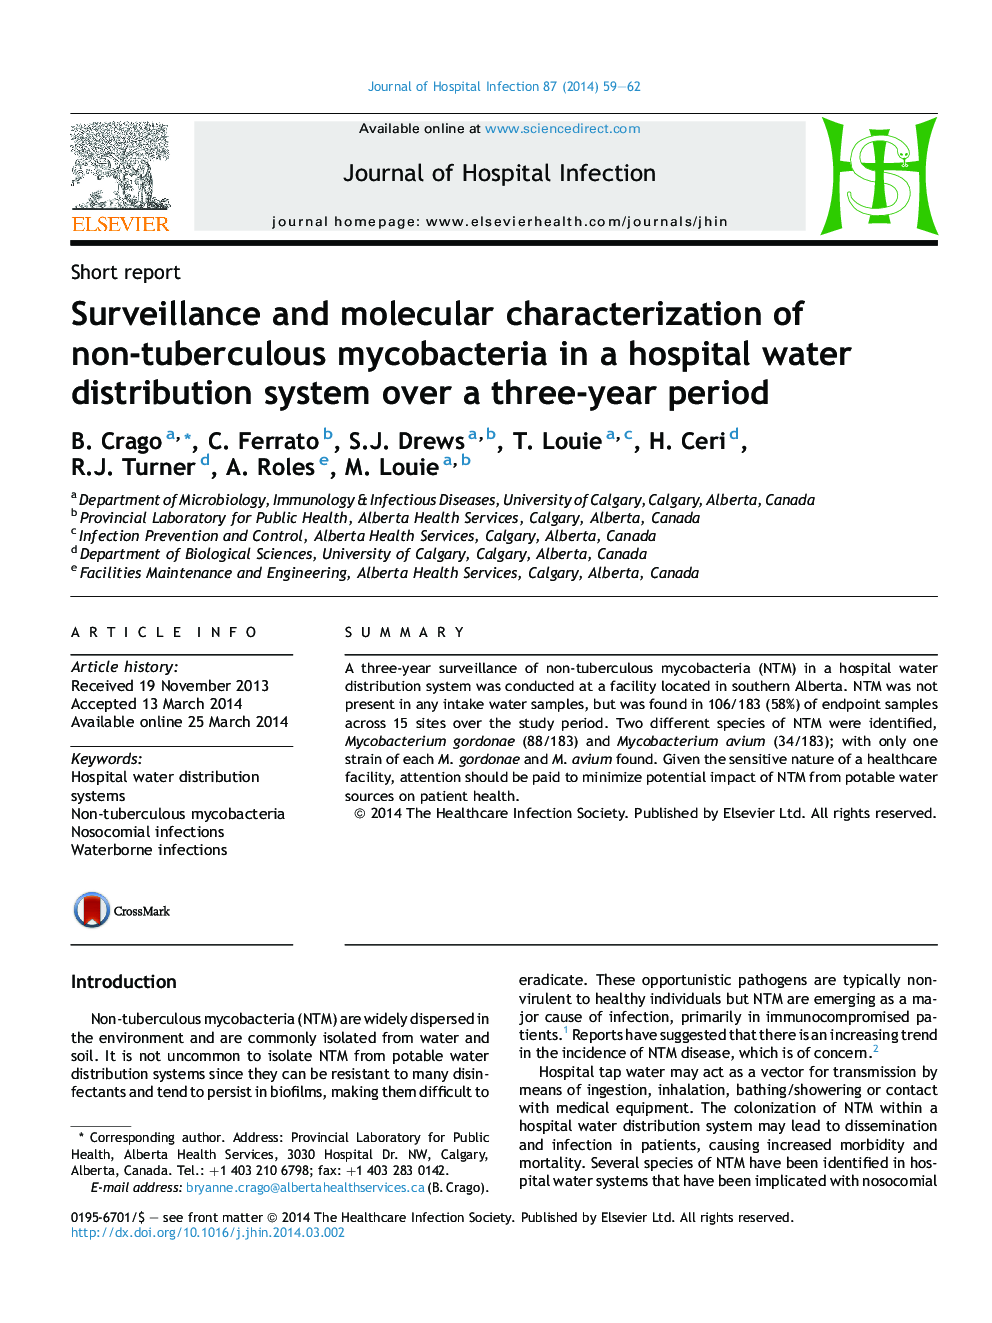 نظارت و شناسایی مولکولی مایکوباکتریوم غیر سل در یک سیستم توزیع آب در بیمارستان طی یک دوره سه ساله 